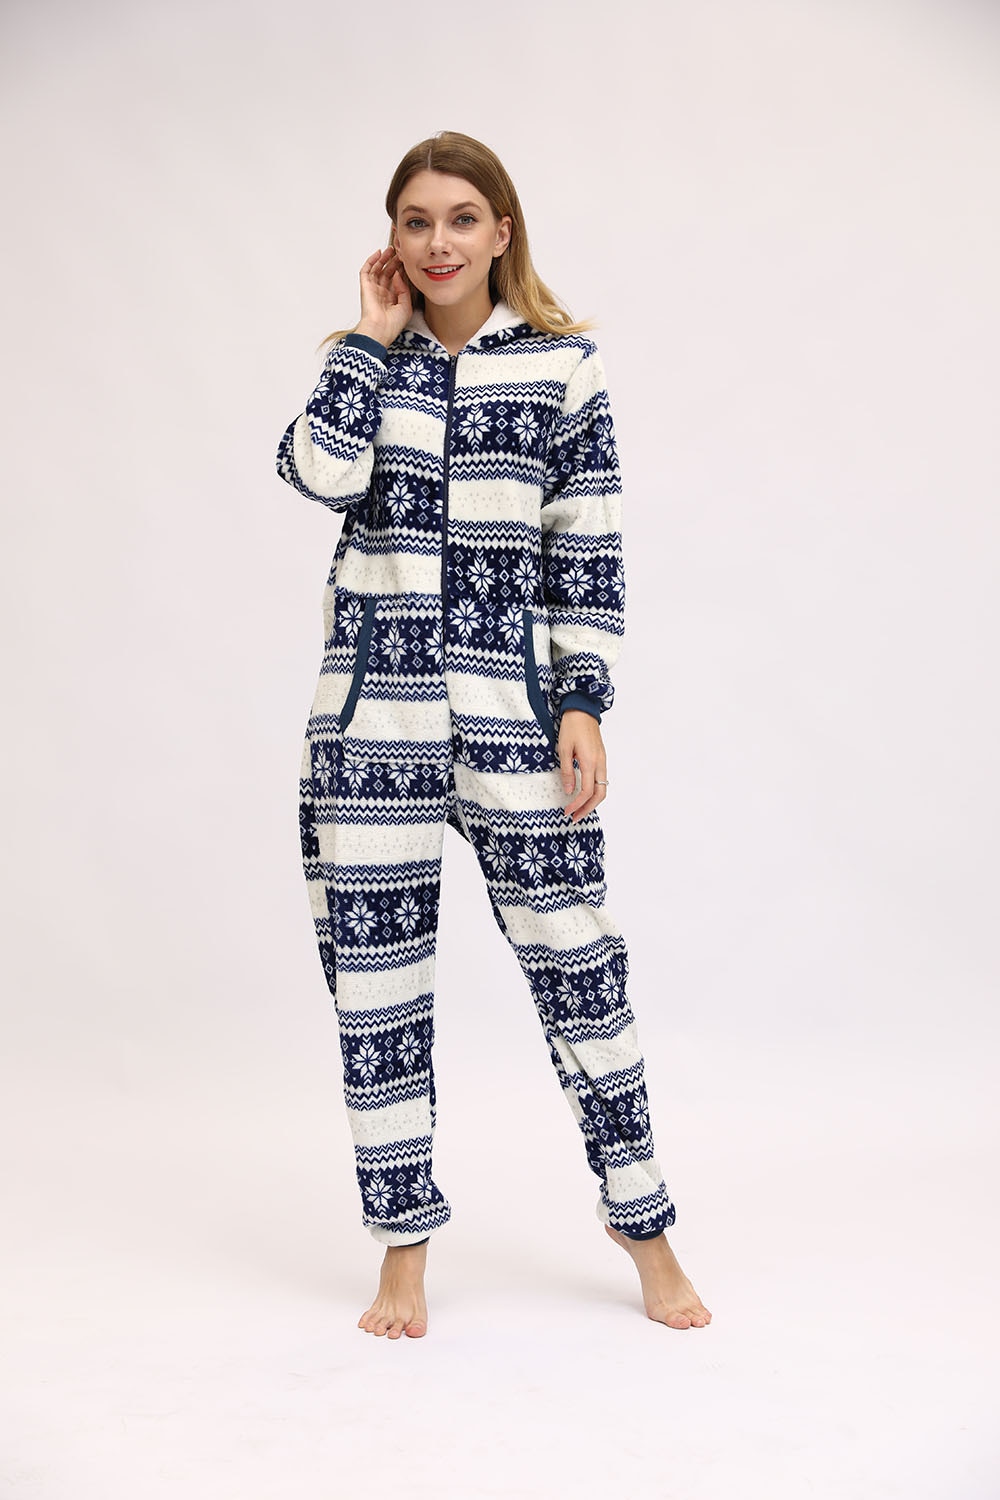 Christmas Hooded Onesie Adult Woman Elk Snow Print Party Jumpsuit Wide Stripes Zipper Hood Pajamas Female Winter Warm Pyjamas